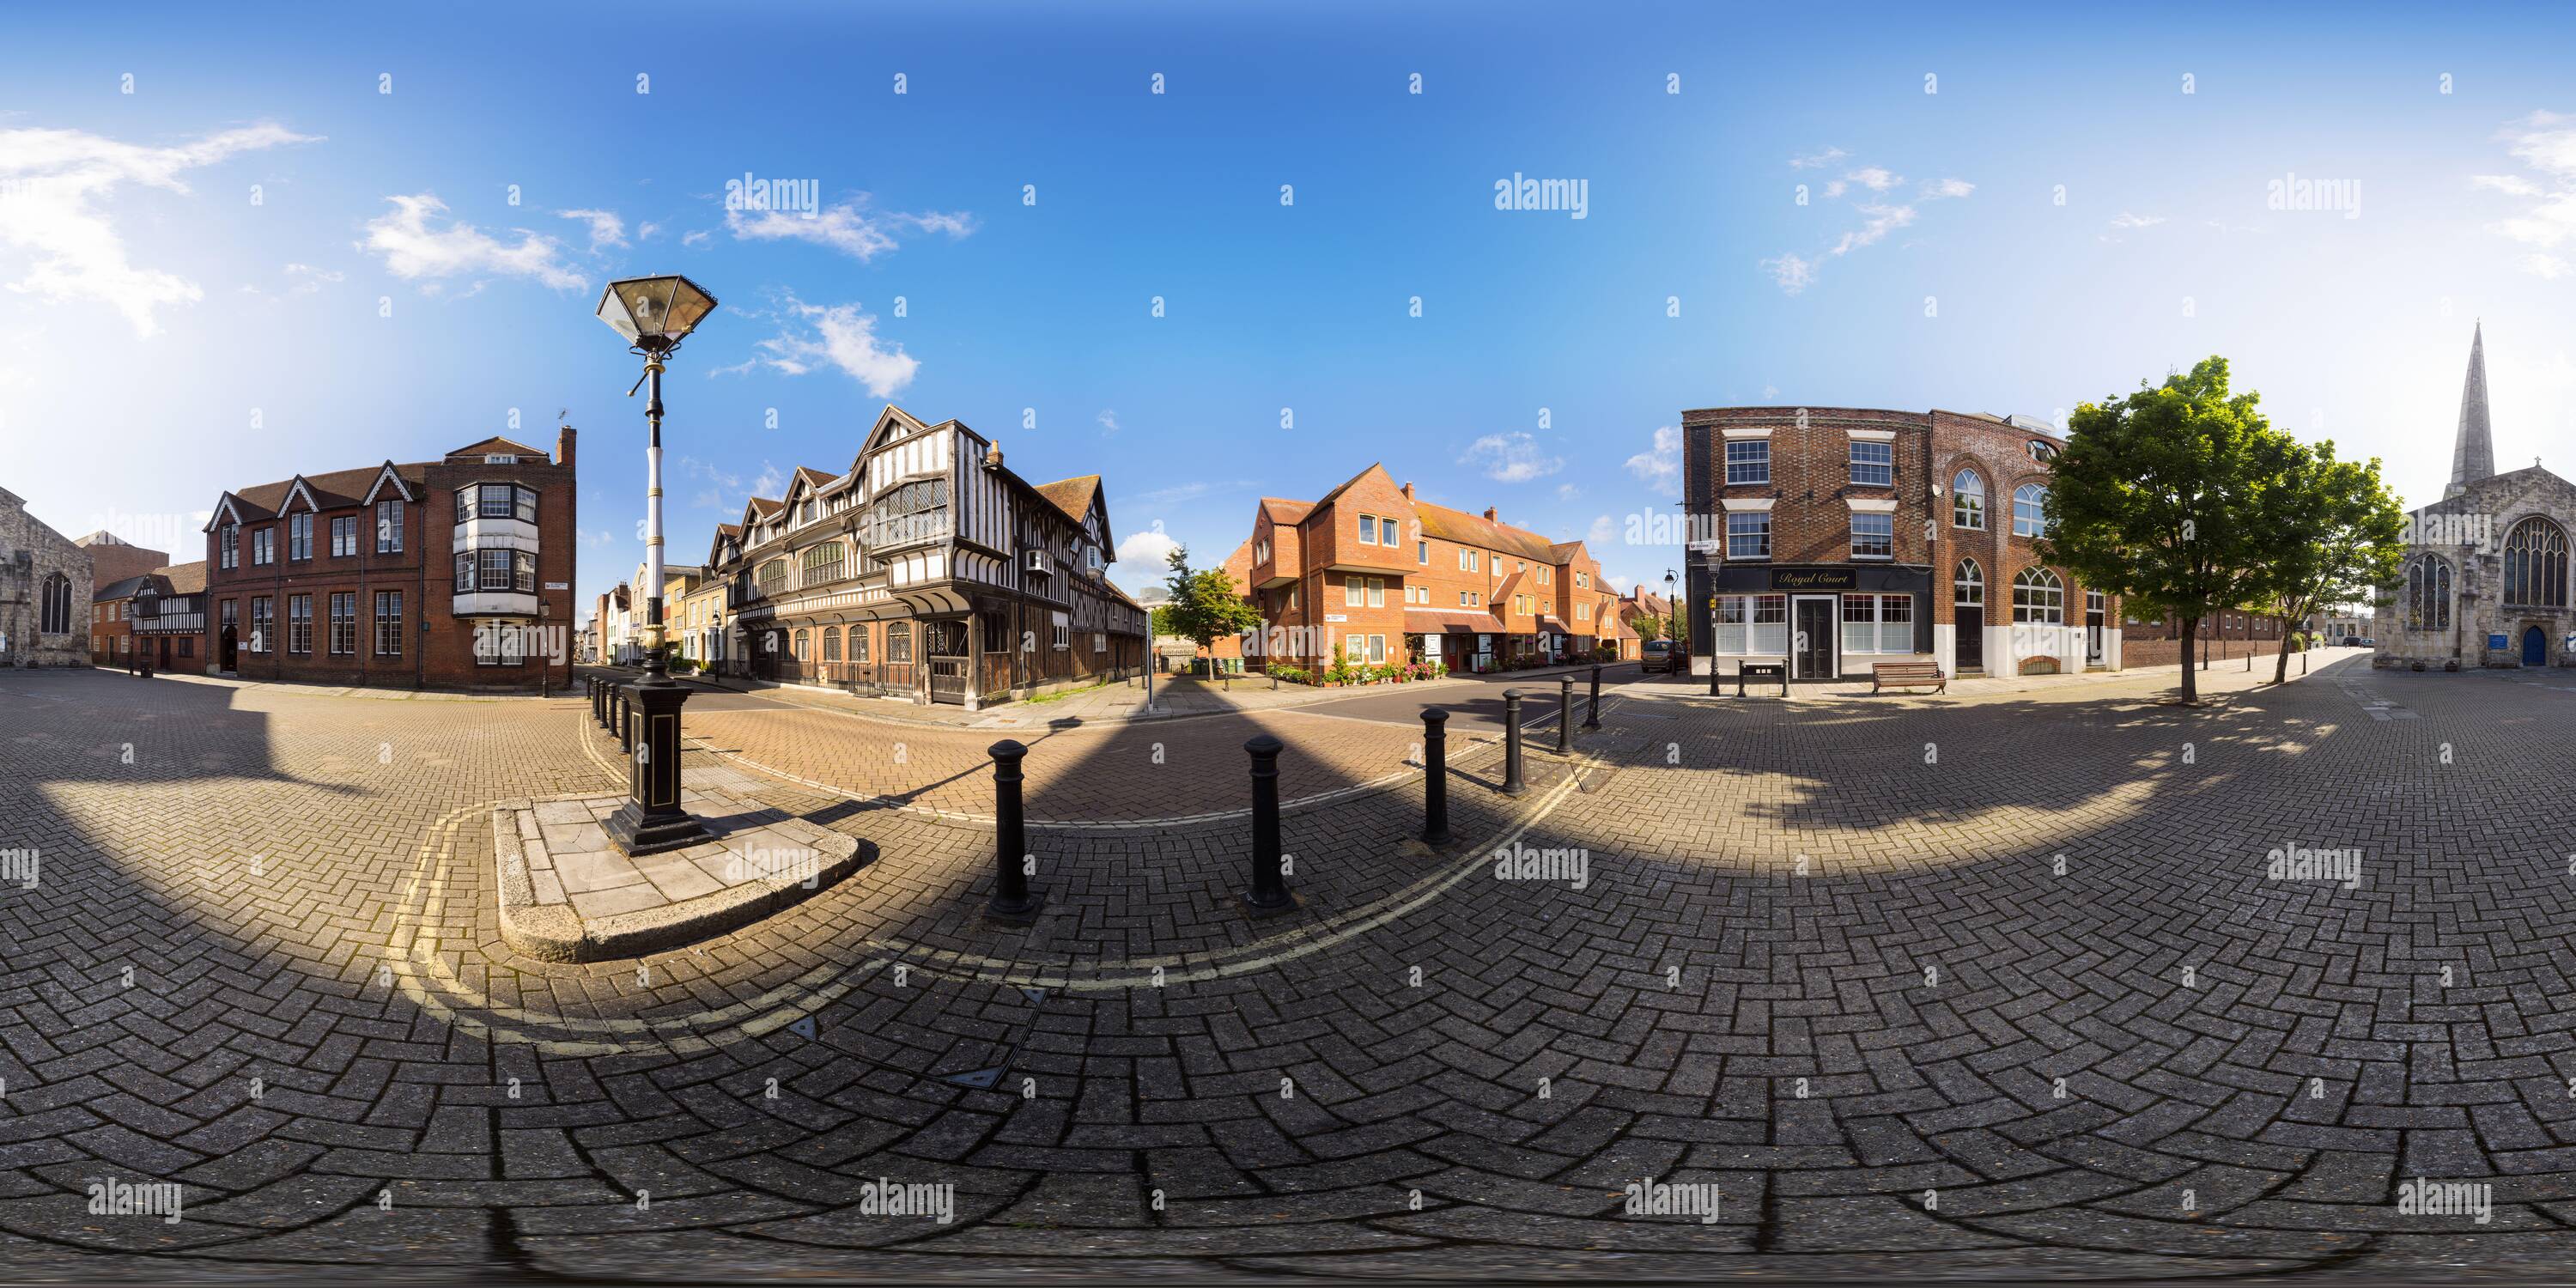 Visualizzazione panoramica a 360 gradi di Il museo Tudor House e la storica chiesa di San Michele in Piazza San Michele, nei pressi di Bugle Street, nel centro storico medievale di Southampton.